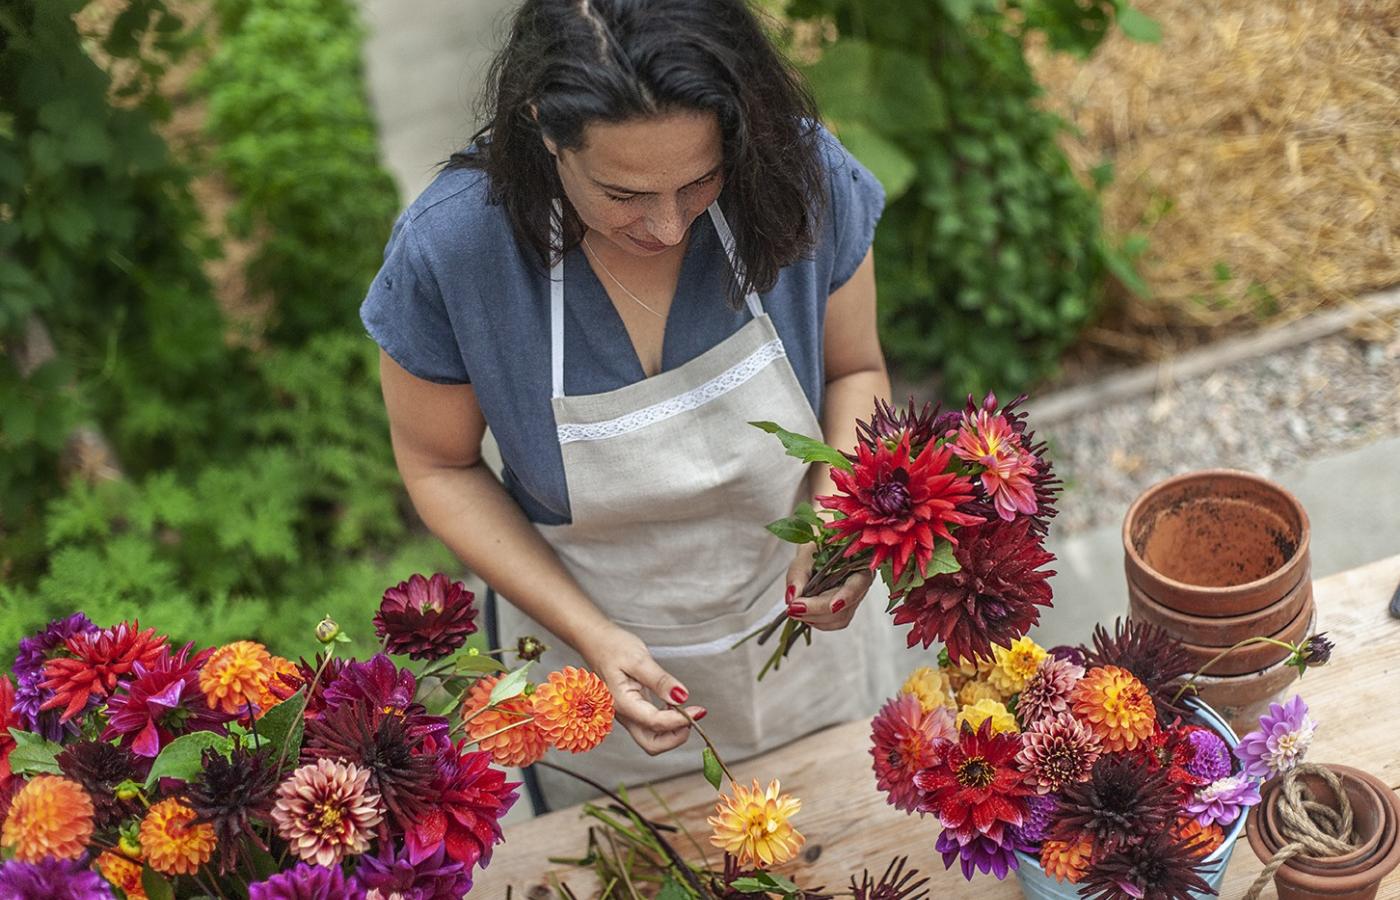  Układanie bukietów ze świeżo zerwanych z ogrodu kwiatów to wyjątkowa przyjemność. (Fot. Agnieszka Majewska)